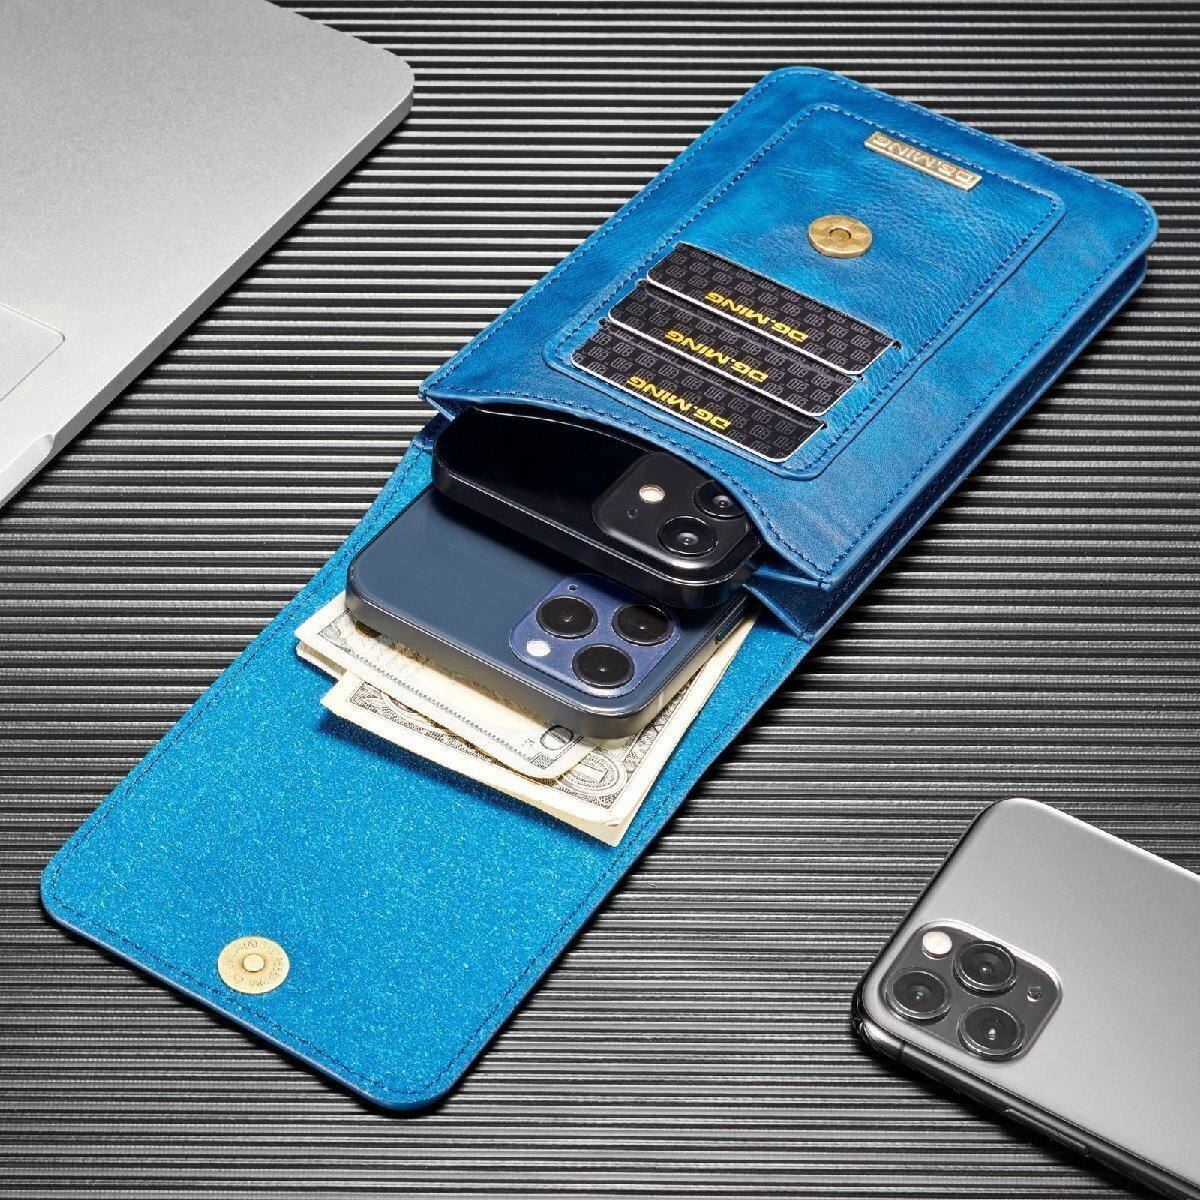 ベルトポーチ メンズ バッグ スマホポーチ 仕切り pu革 ミニバッグ カード大量収納 軽量 スマホポーチ L(6.5インチ) ブルー MAY1050_画像7